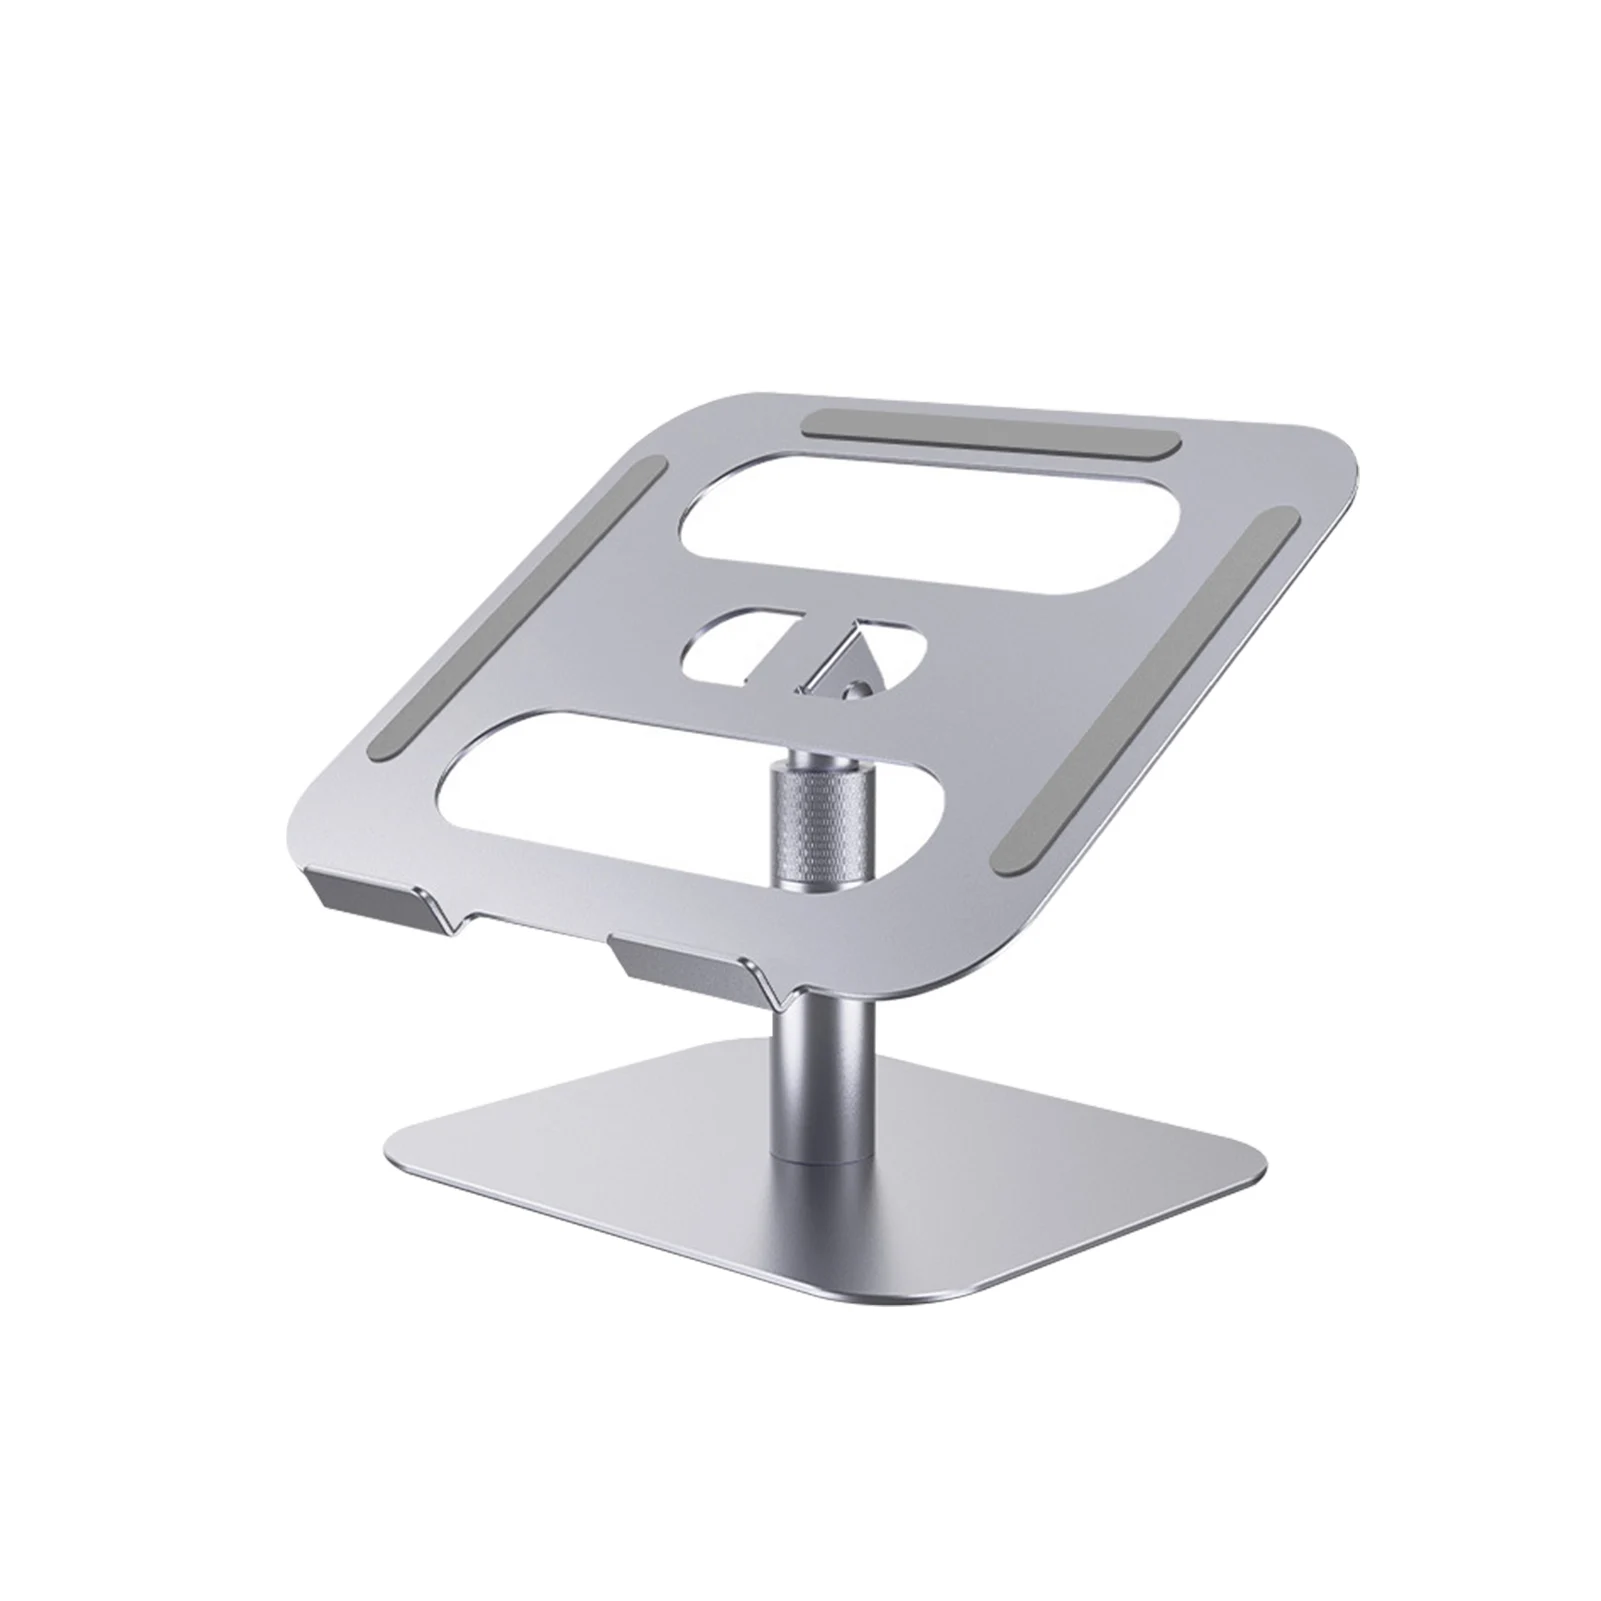 Ergonomic For Desk Notebook Riser Non Slip Portable Gift Laptop Stand Holder Adjustable Height Aluminum Alloy Table Easy Install